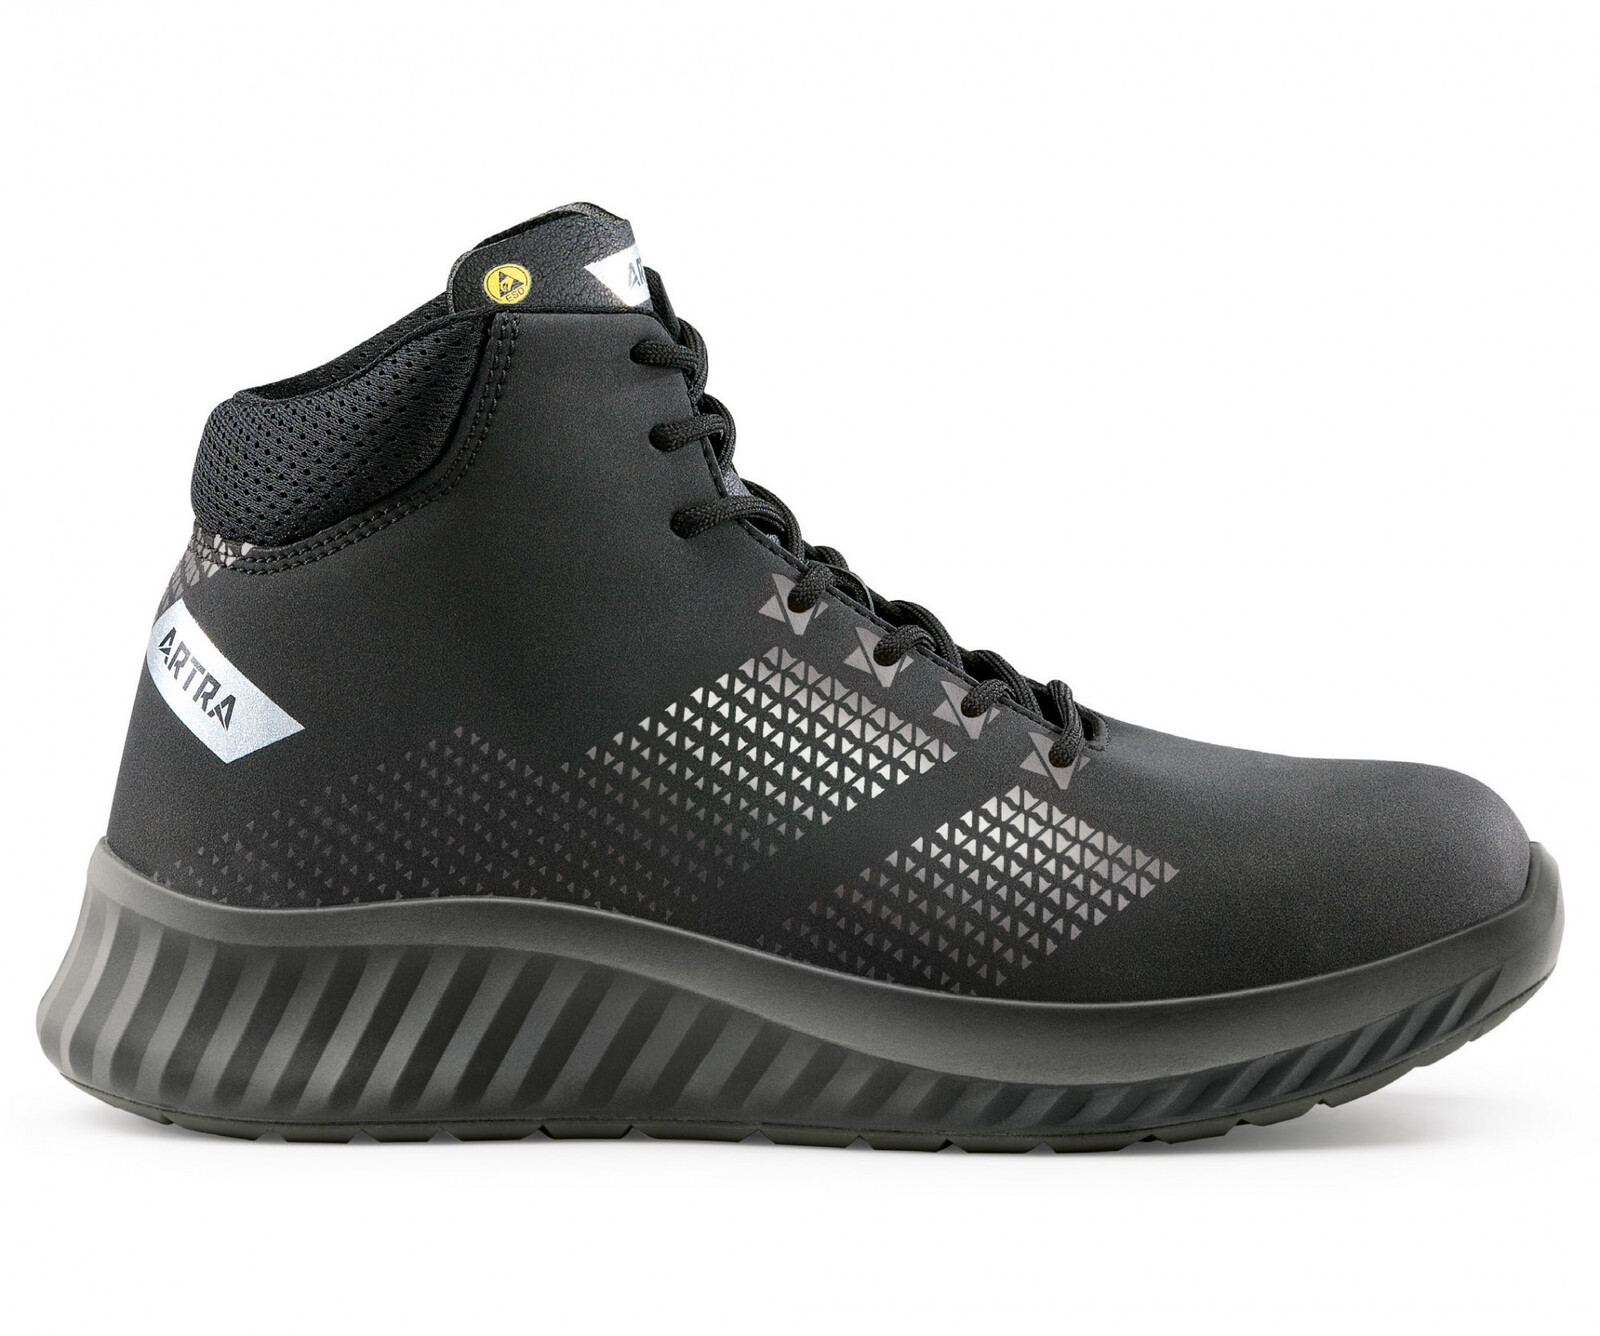 Bezpečnostná členková obuv Artra Aroserio 750 616560 S3 SRC ESD - veľkosť: 47, farba: čierna/sivá